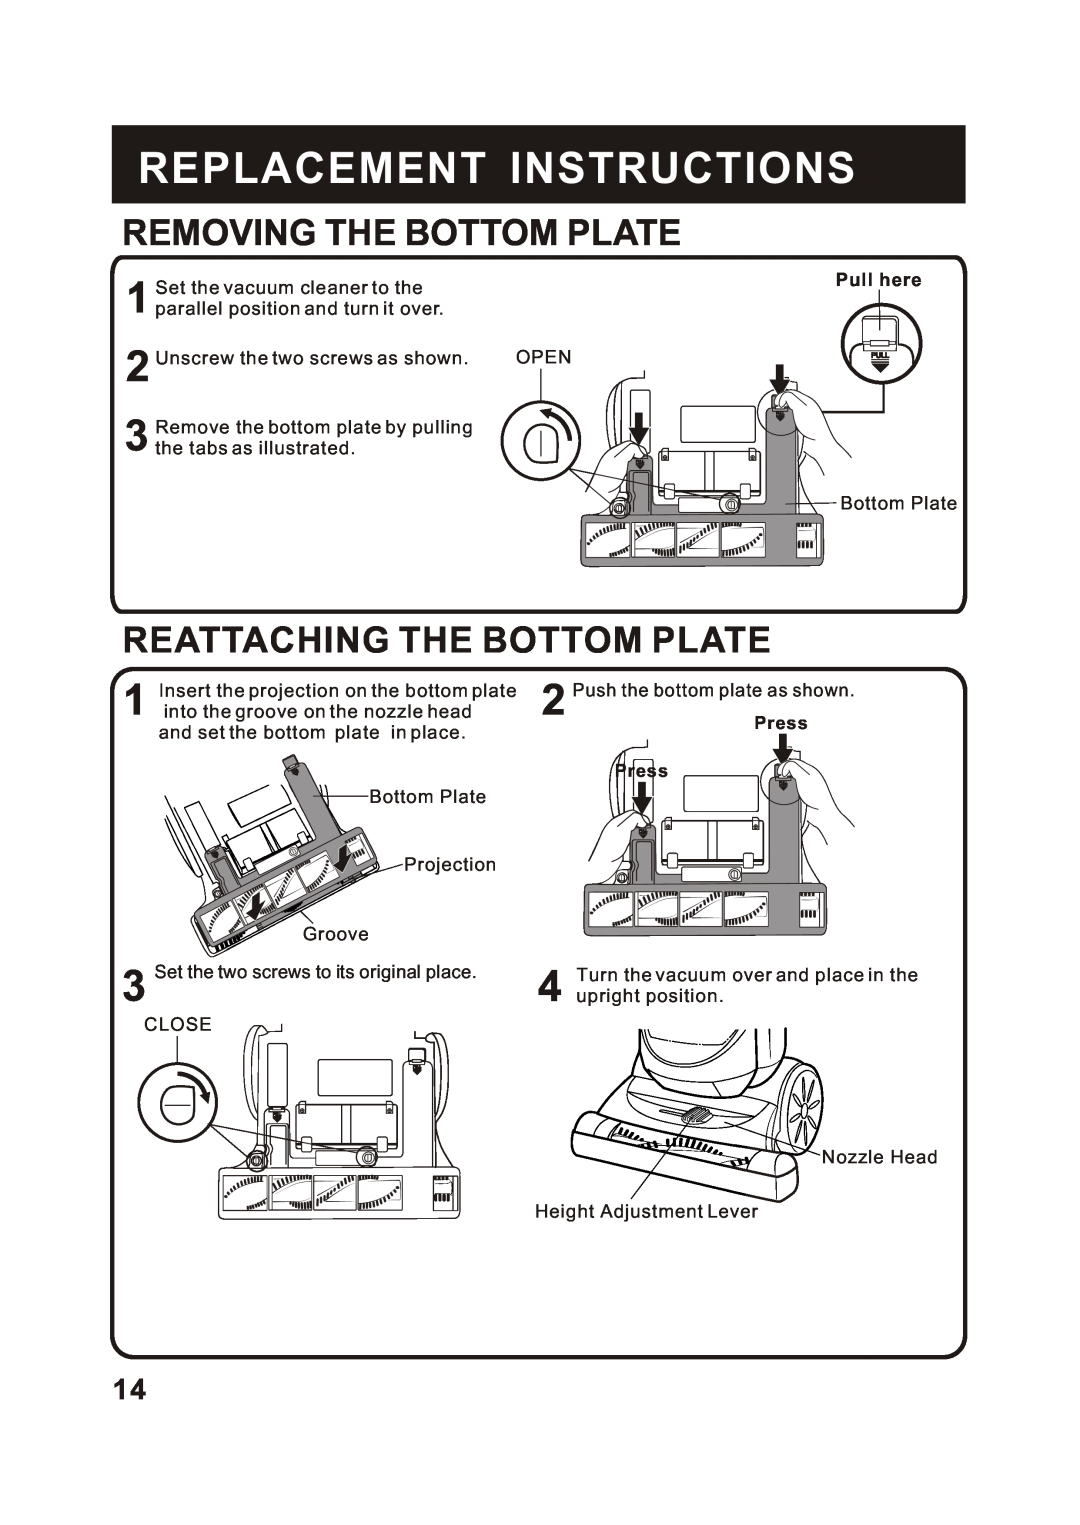 Fantom Vacuum FM780 Removing The Bottom Plate, Reattaching The Bottom Plate, Replacement Instructions, Pull here 